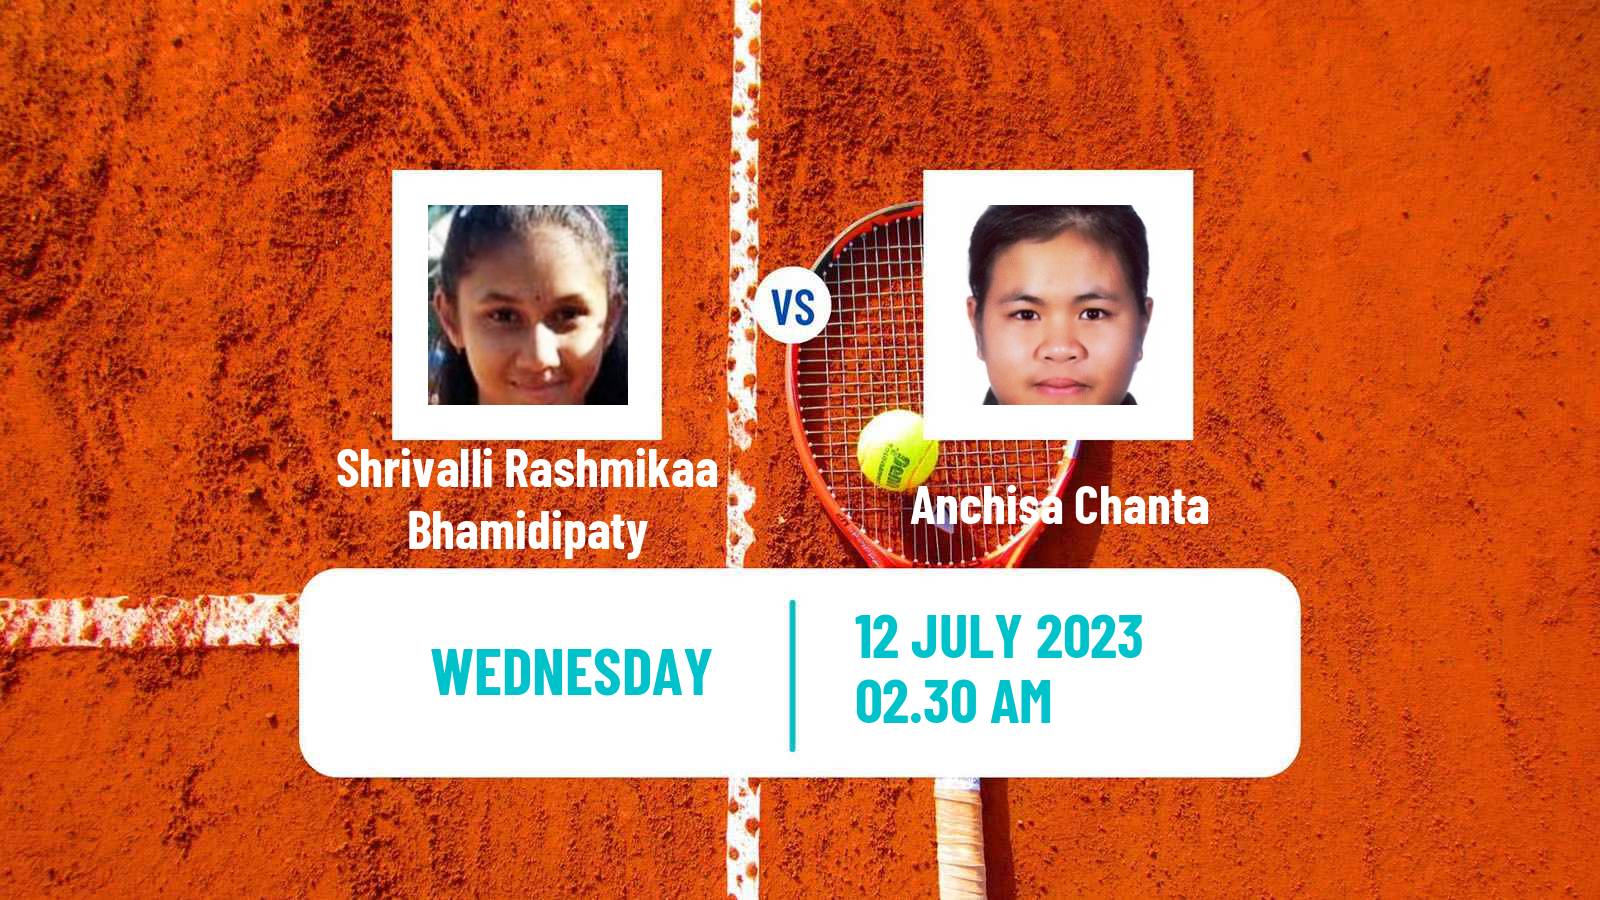 Tennis ITF W15 Nakhon Si Thammarat 3 Women Shrivalli Rashmikaa Bhamidipaty - Anchisa Chanta